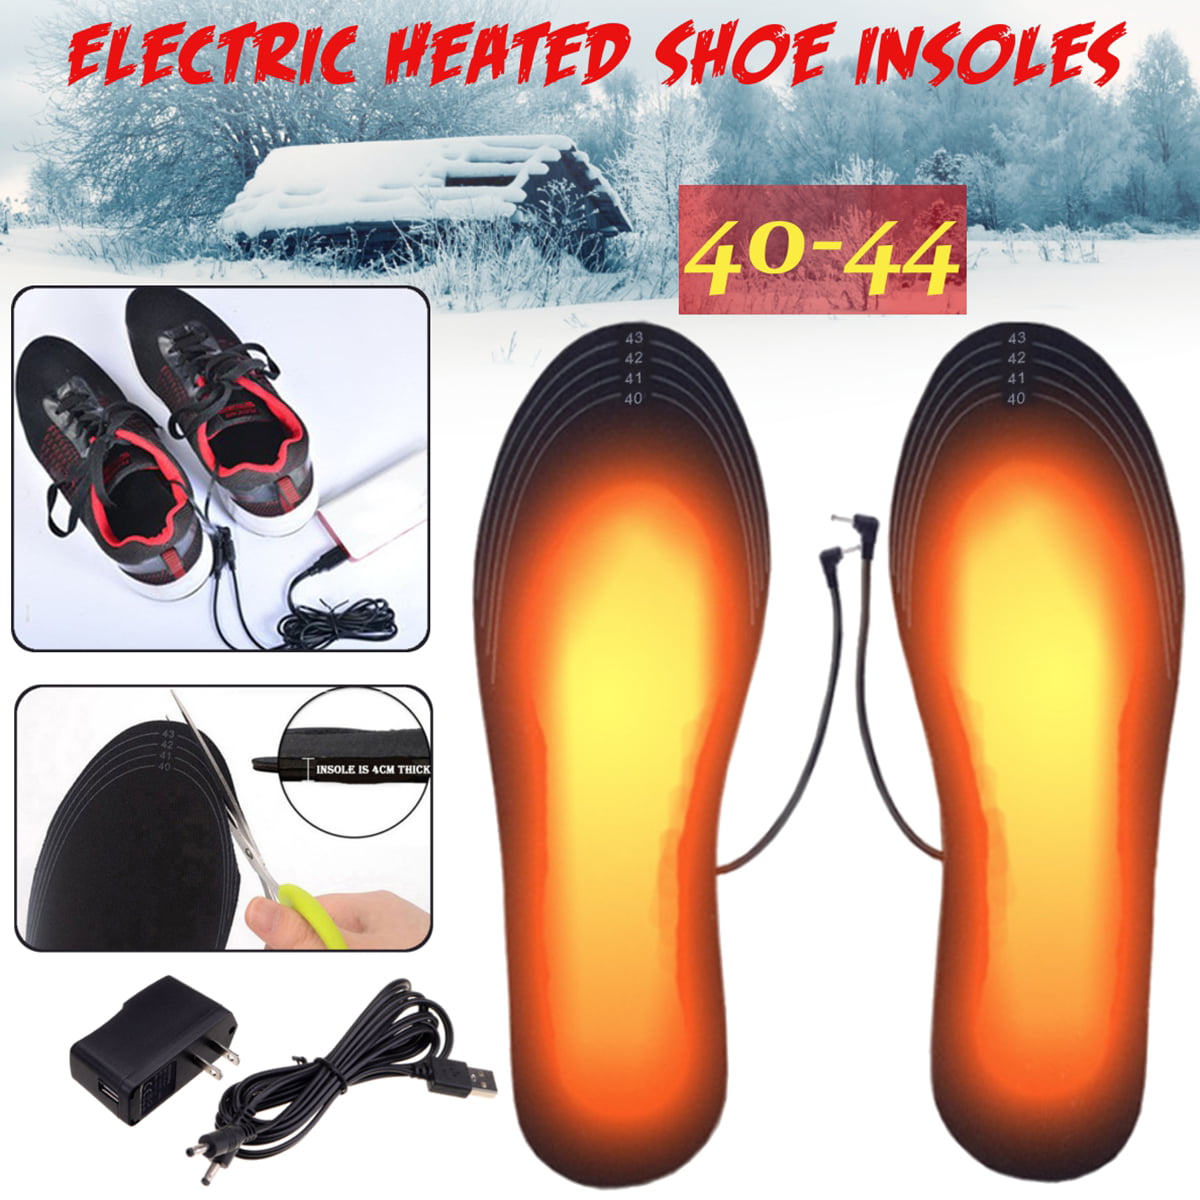 Usb Electric Heated Shoe Insoles Warm Socks Feet Heater Foot Winter Warmer 